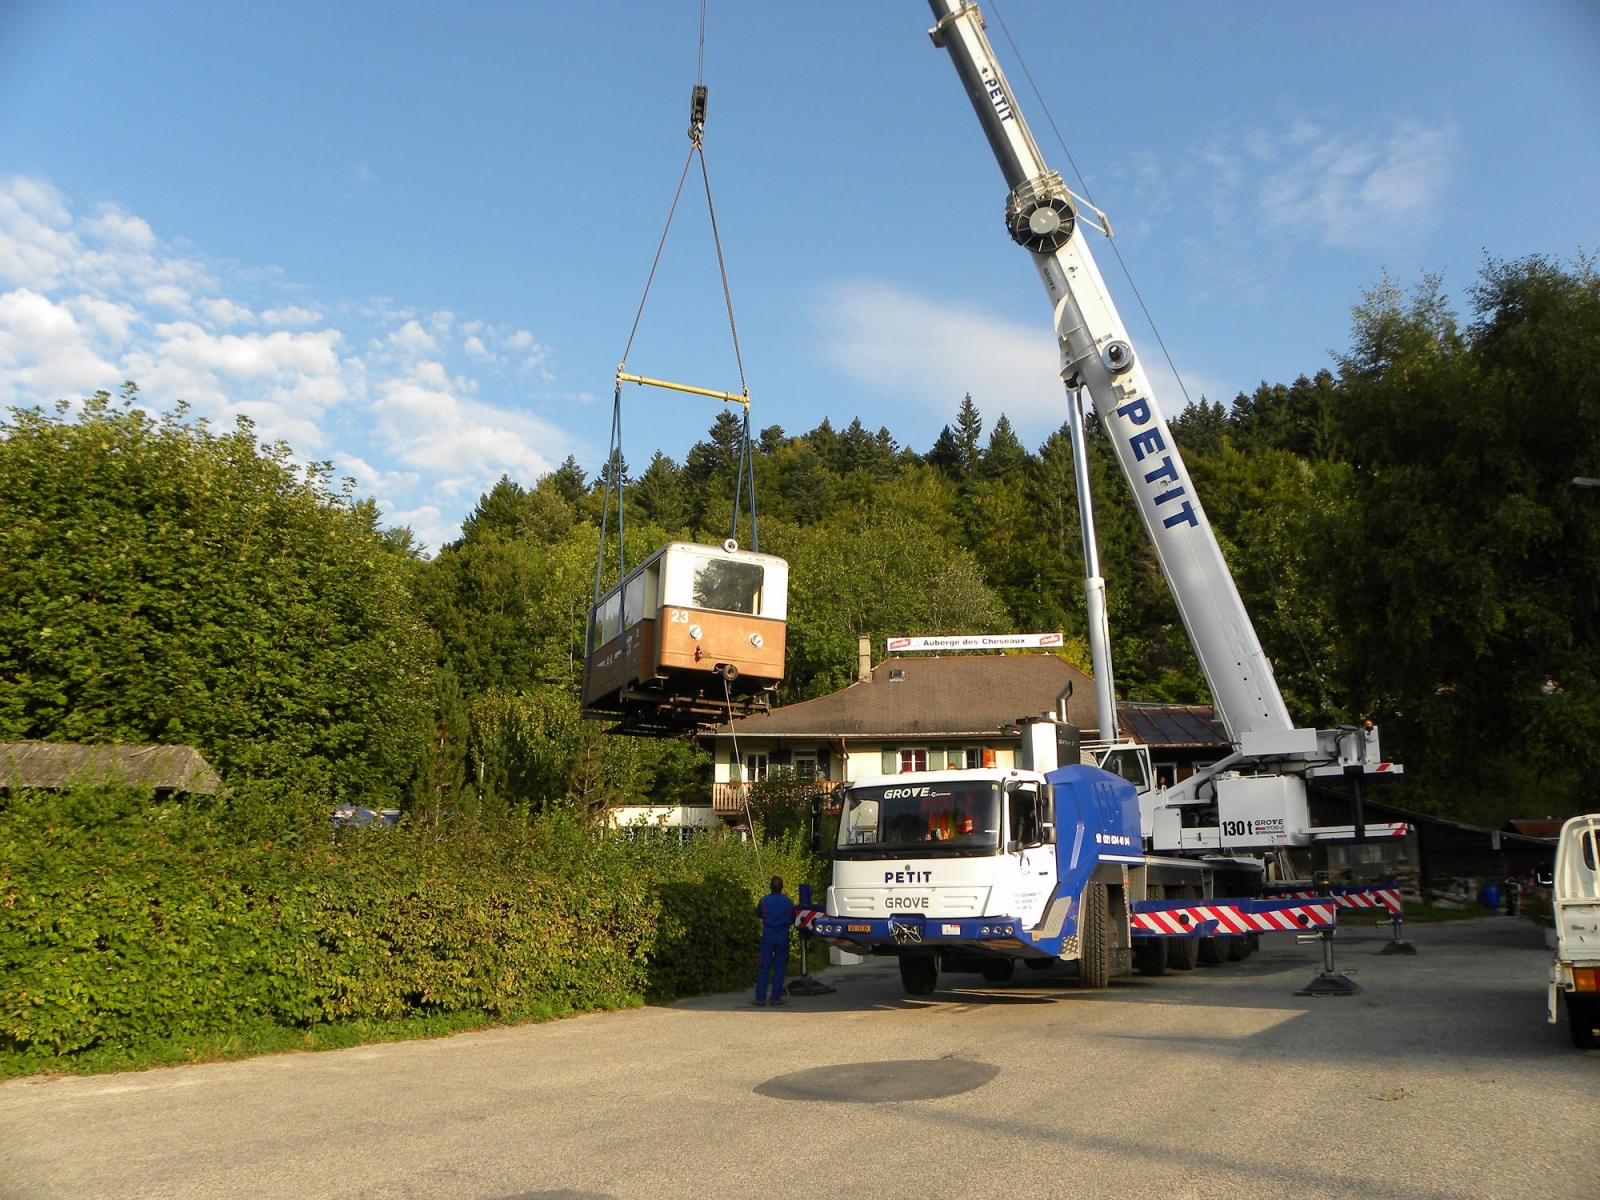 En septembre 2012, la Fondation a déjà récupéré deux petits wagons venant du chemins de fer Aigle-Leysin qu'elle a transformés en musée d'histoire naturelle et en un espace d'artisanat.